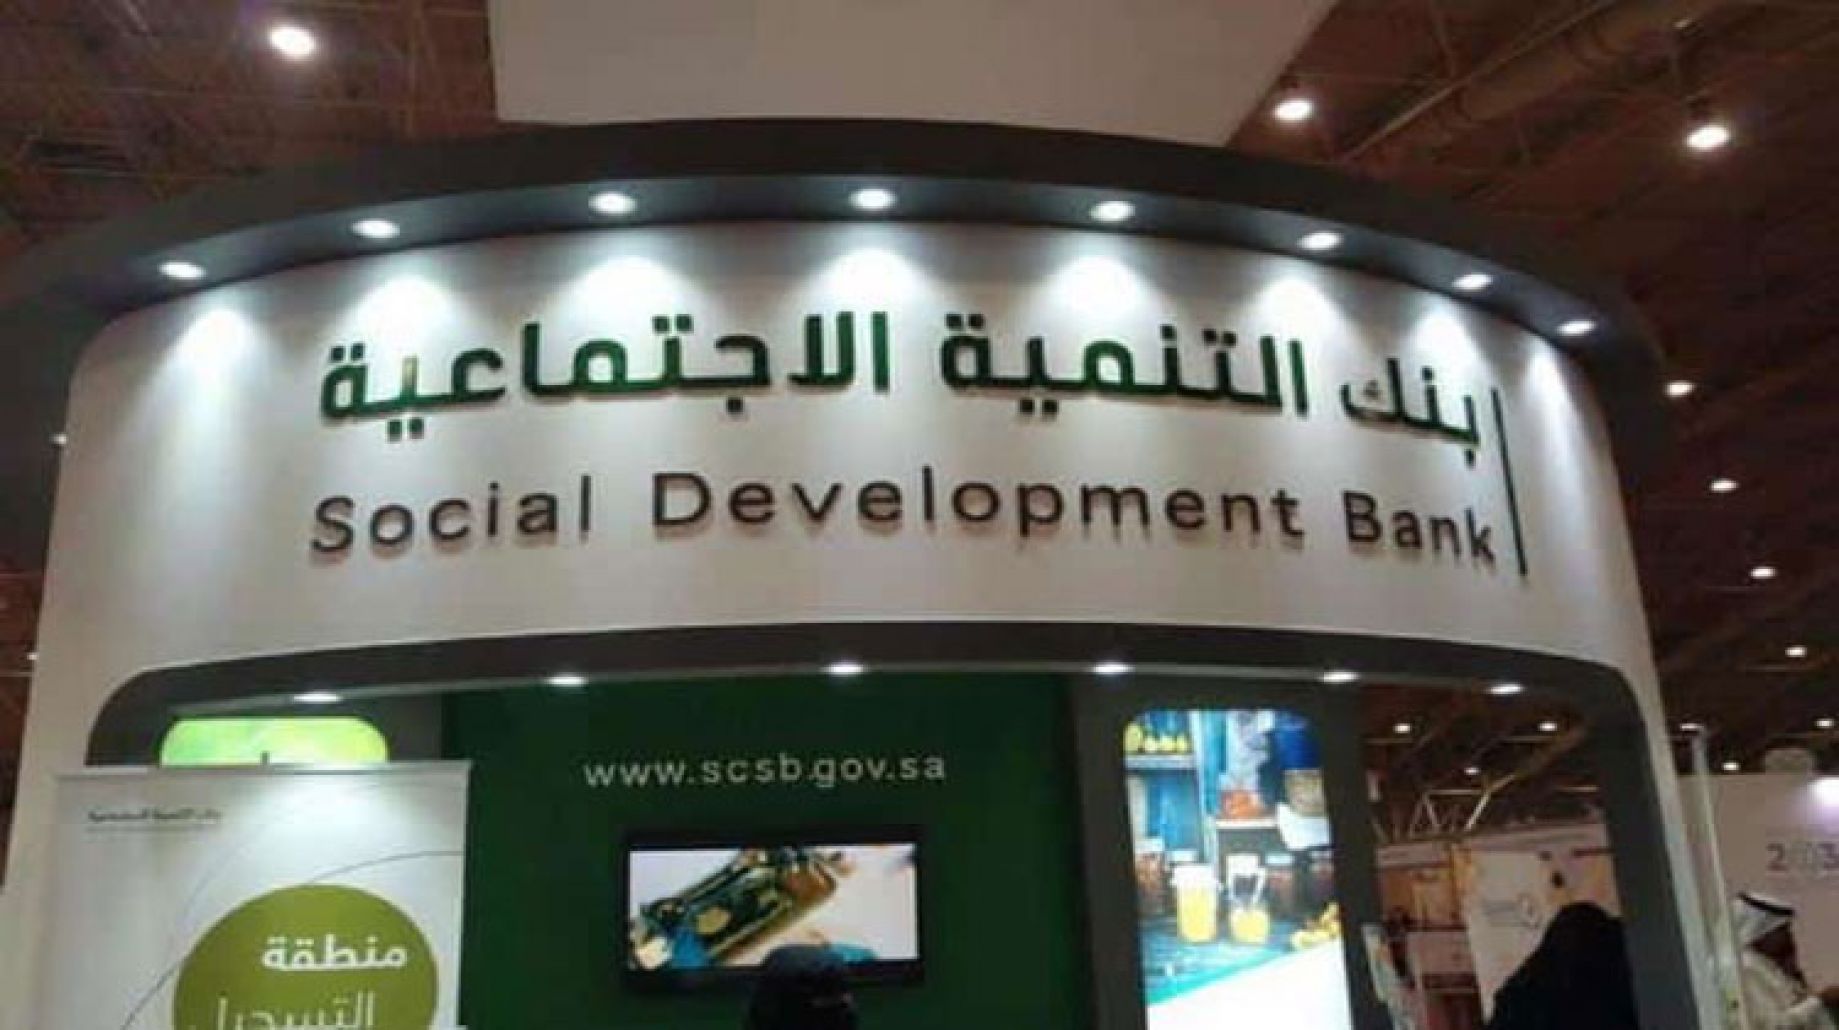 بنك التنمية الاجتماعية يعقد اتفاقية مع وزارة الموارد البشرية لخدمة مستفيدي الضمان الاجتماعي